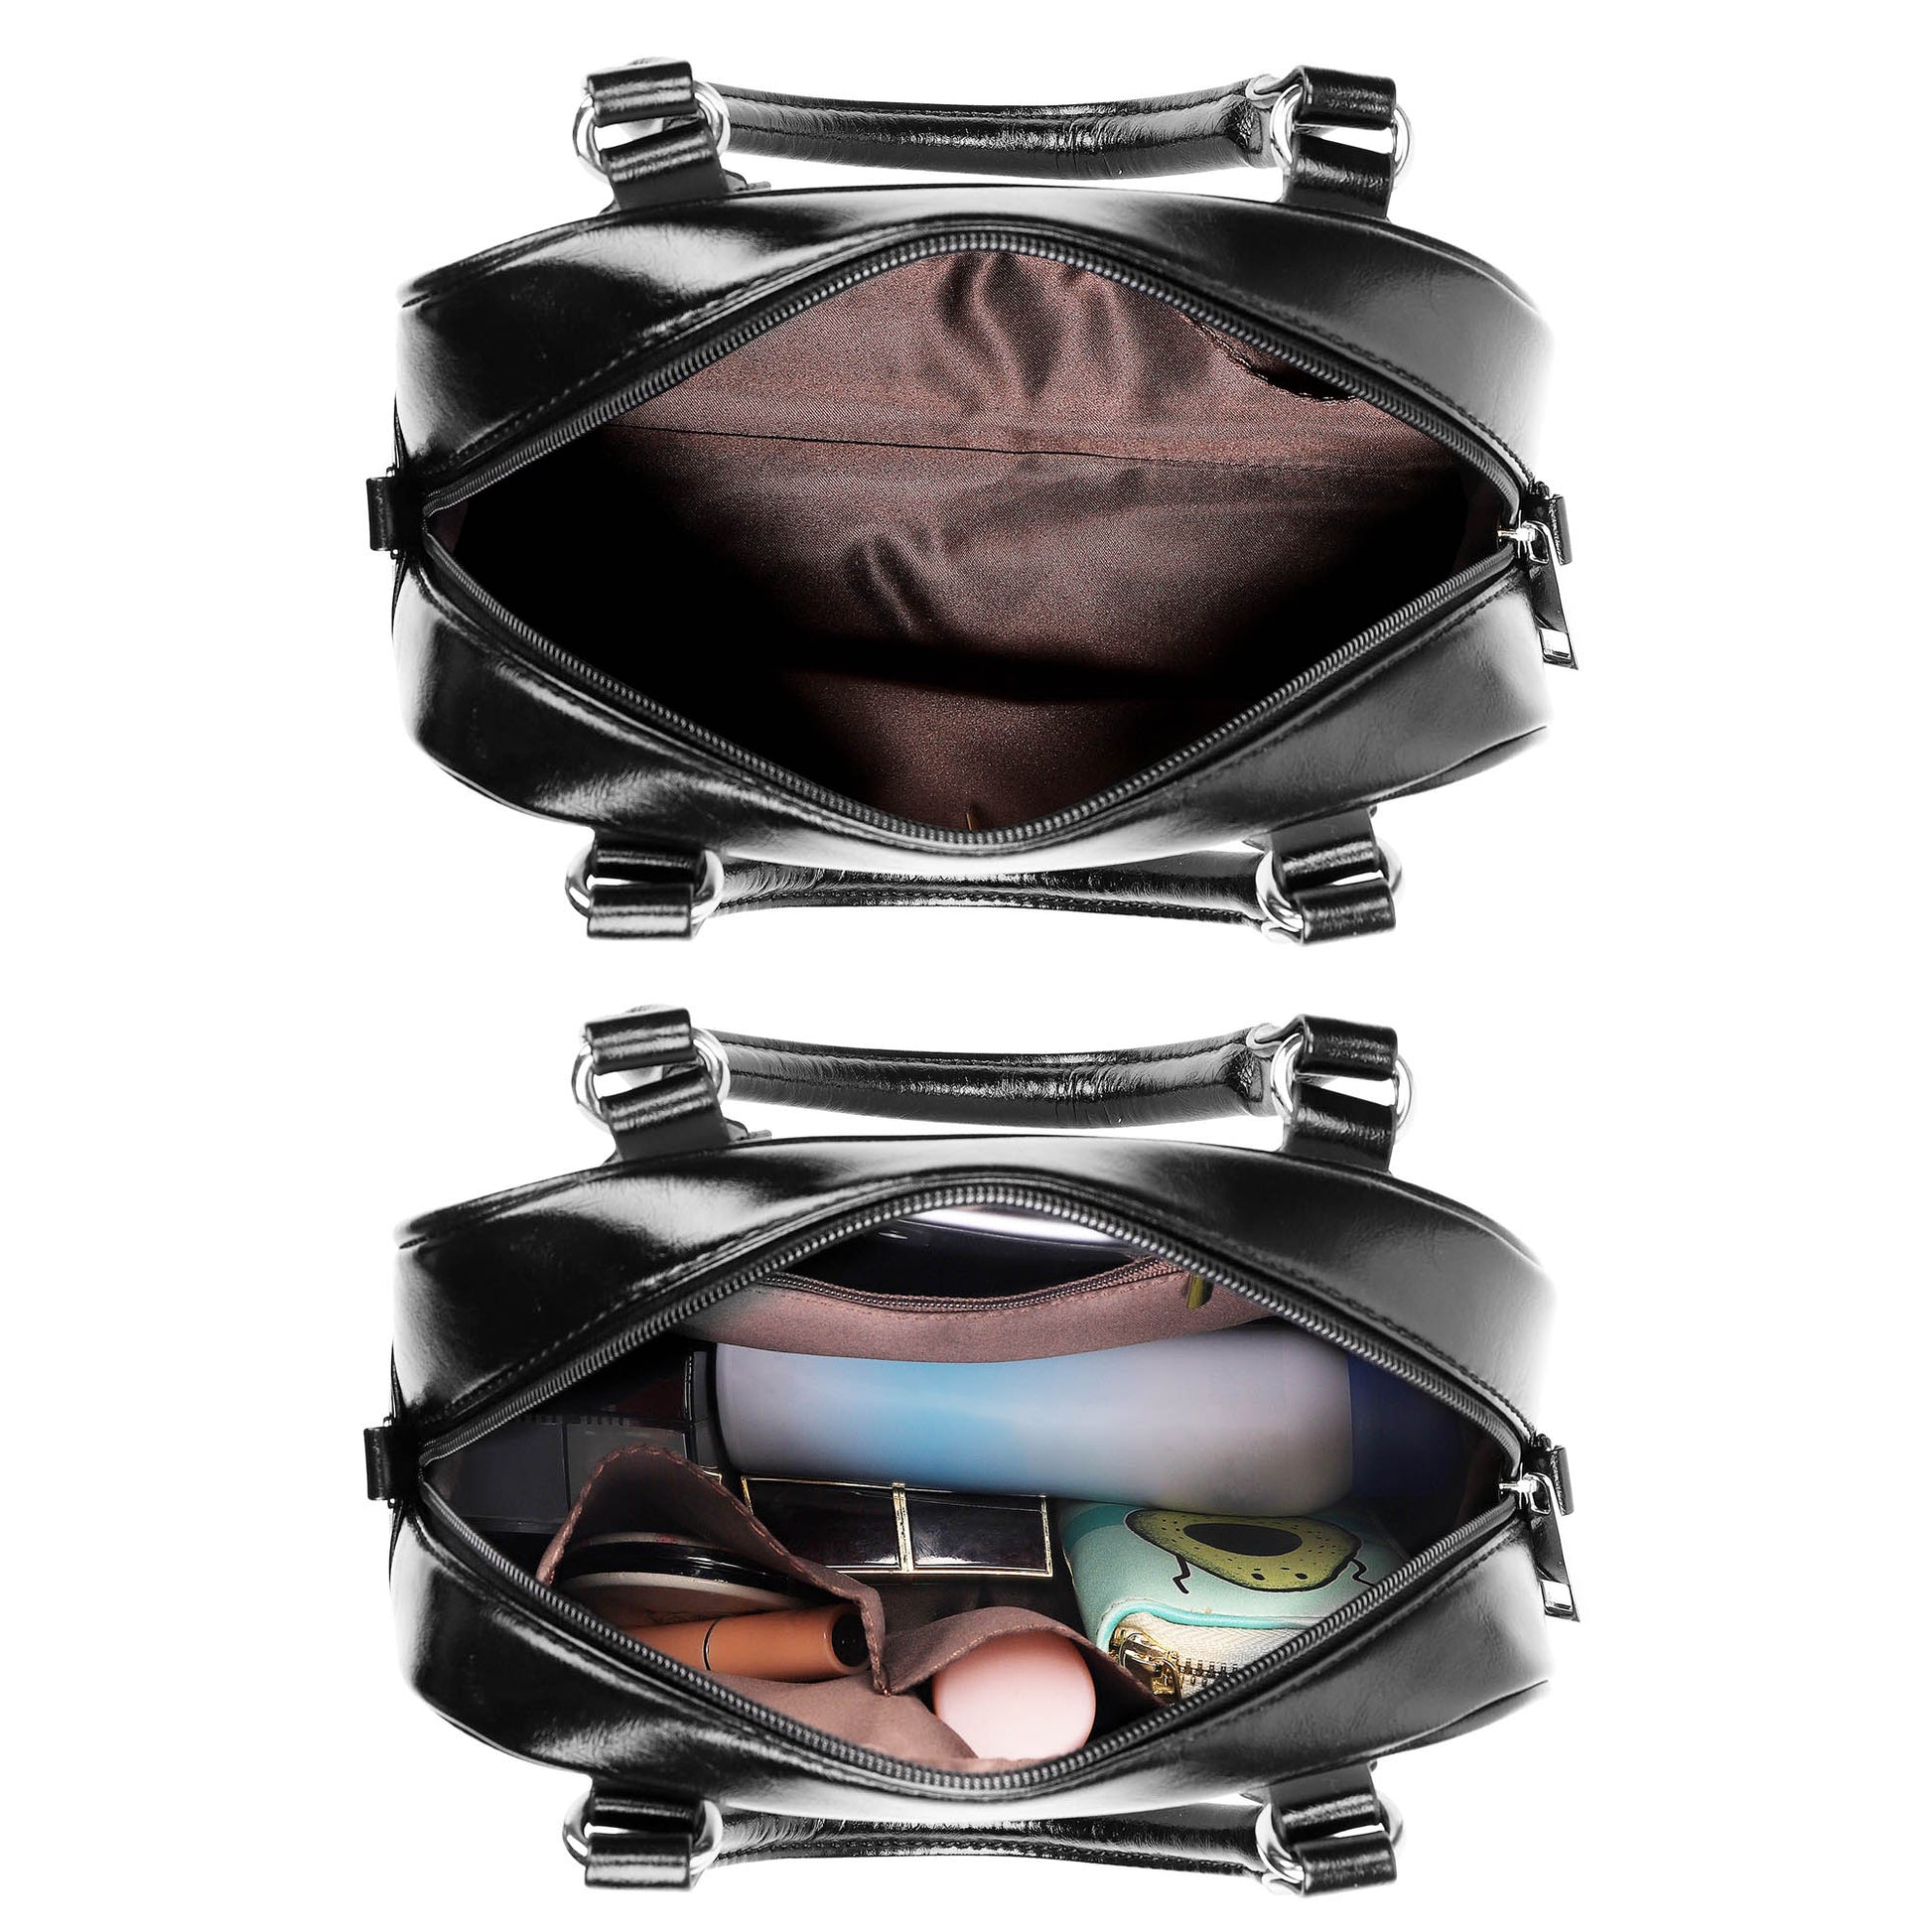 Rattray Tartan Shoulder Handbags - Tartanvibesclothing